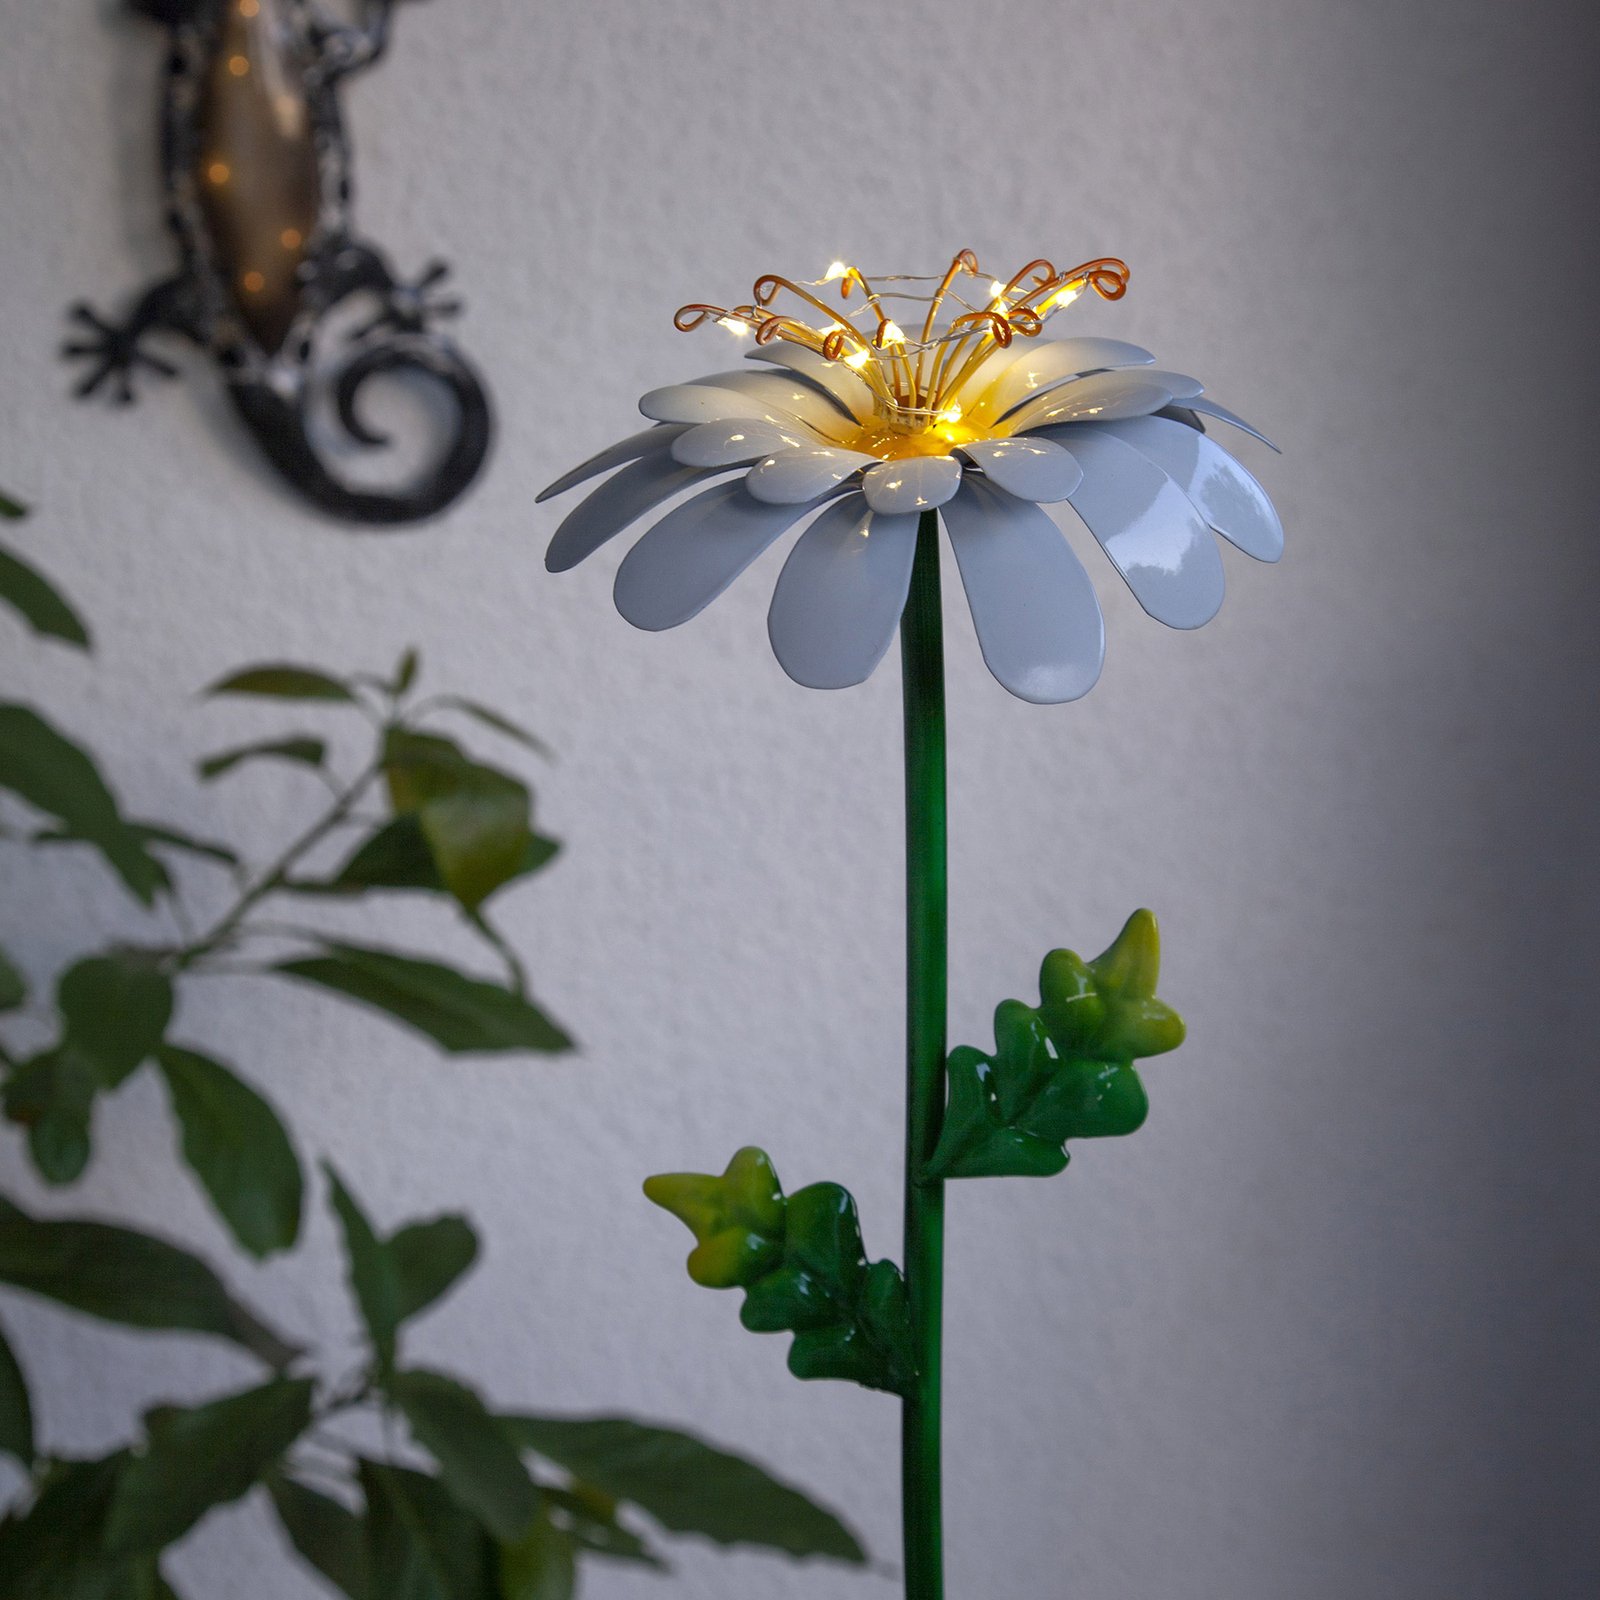 Daisy LED solar light, daisy shape